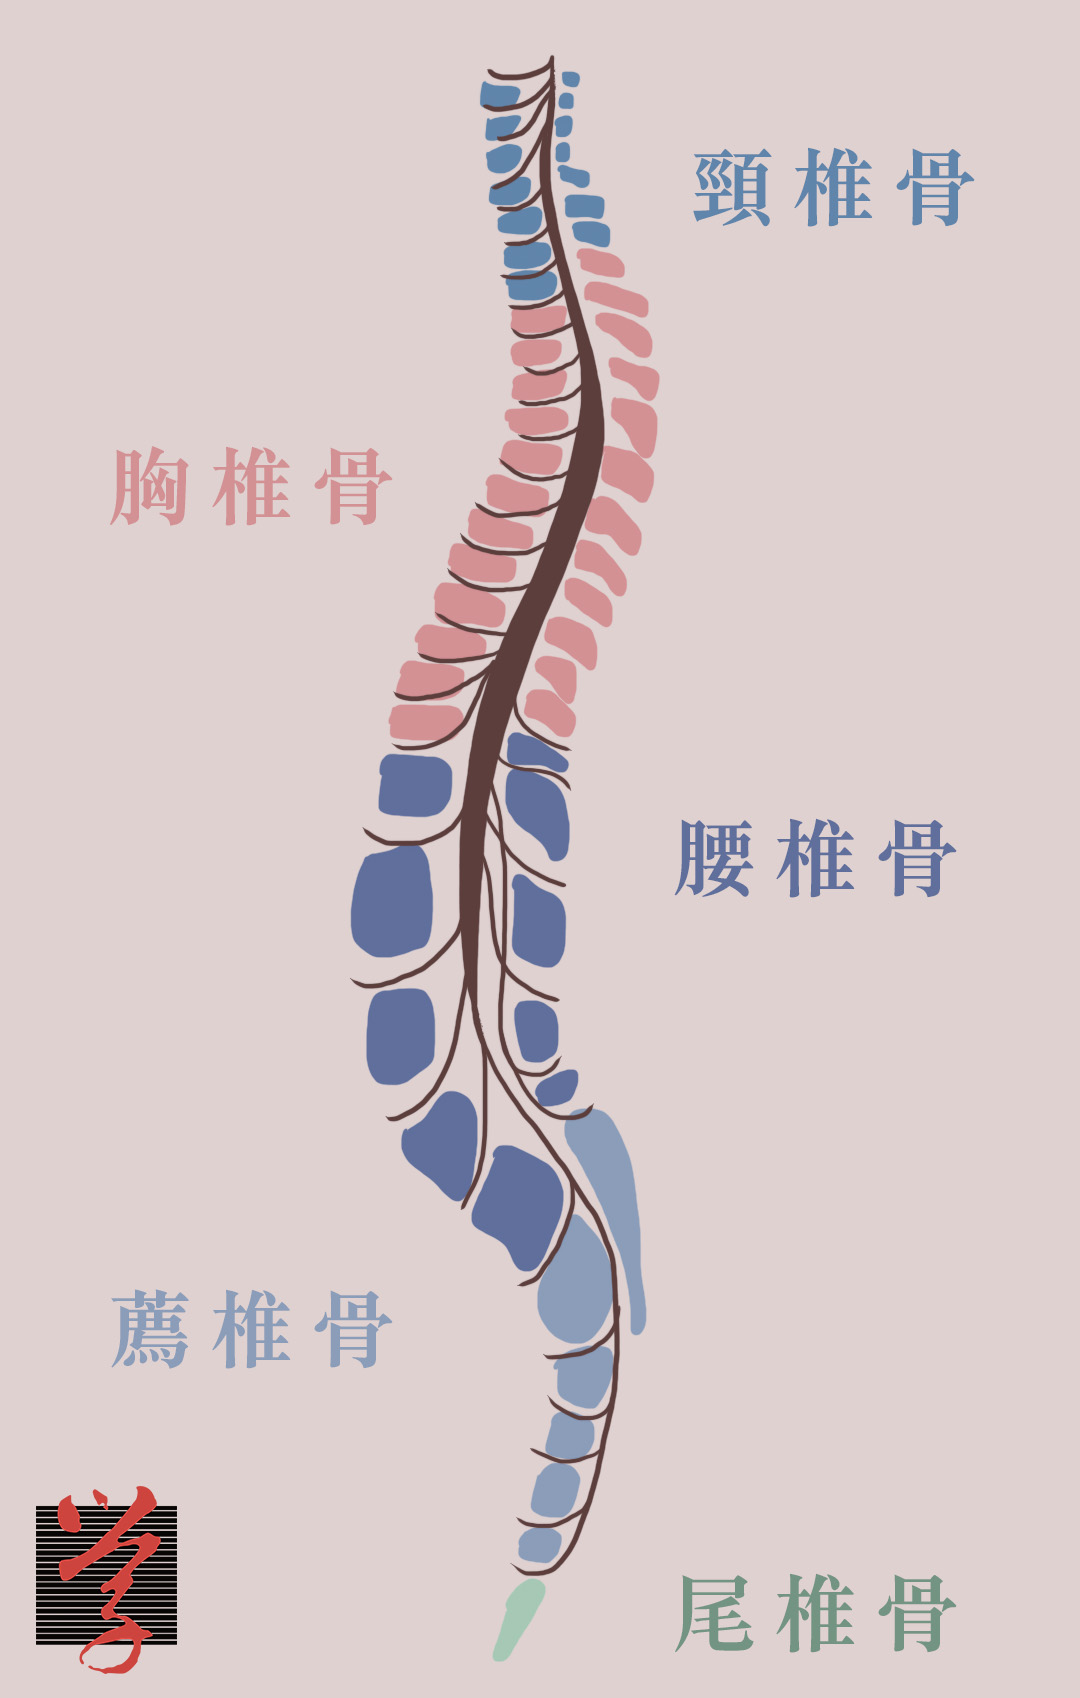 脊髓神經受損 脊髓神經在脊椎骨裡面，由腦部以下延髓部分，經頸椎、胸椎，延伸至腰椎第一及第二節之間
神經受損影響損傷位置以下功能